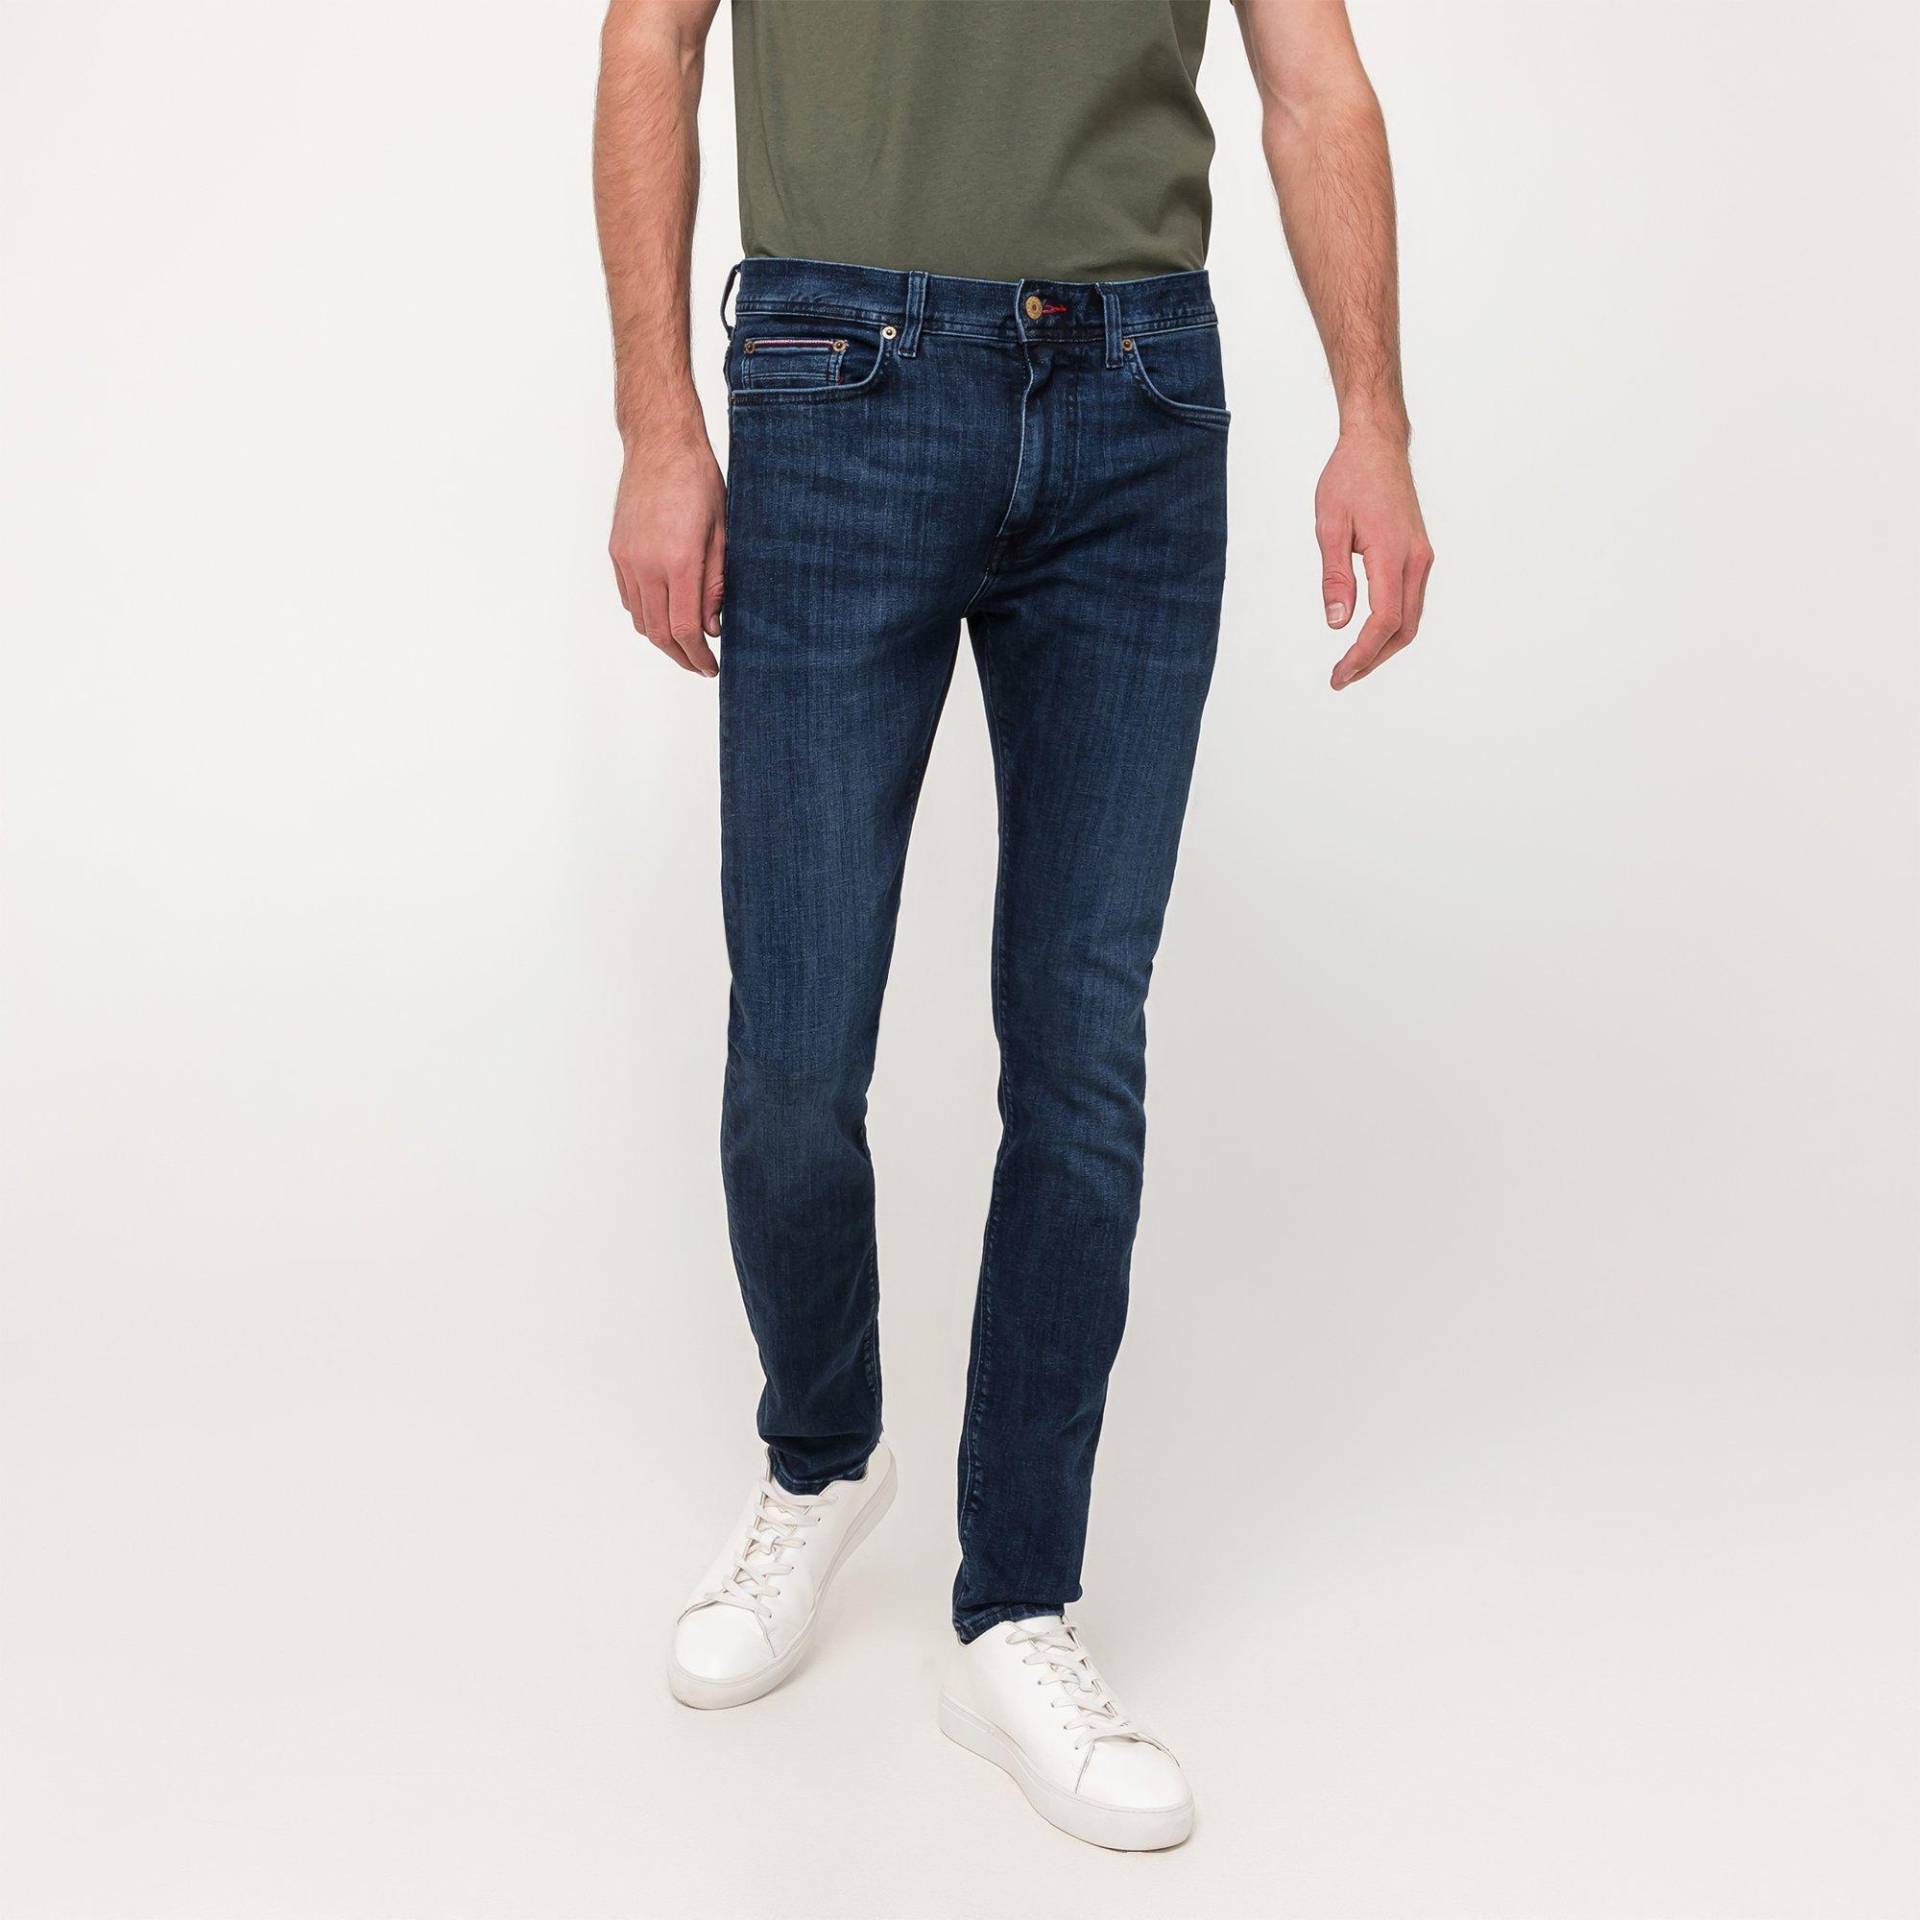 Jeans, Slim Fit Herren Indigo L32/W30 von TOMMY HILFIGER